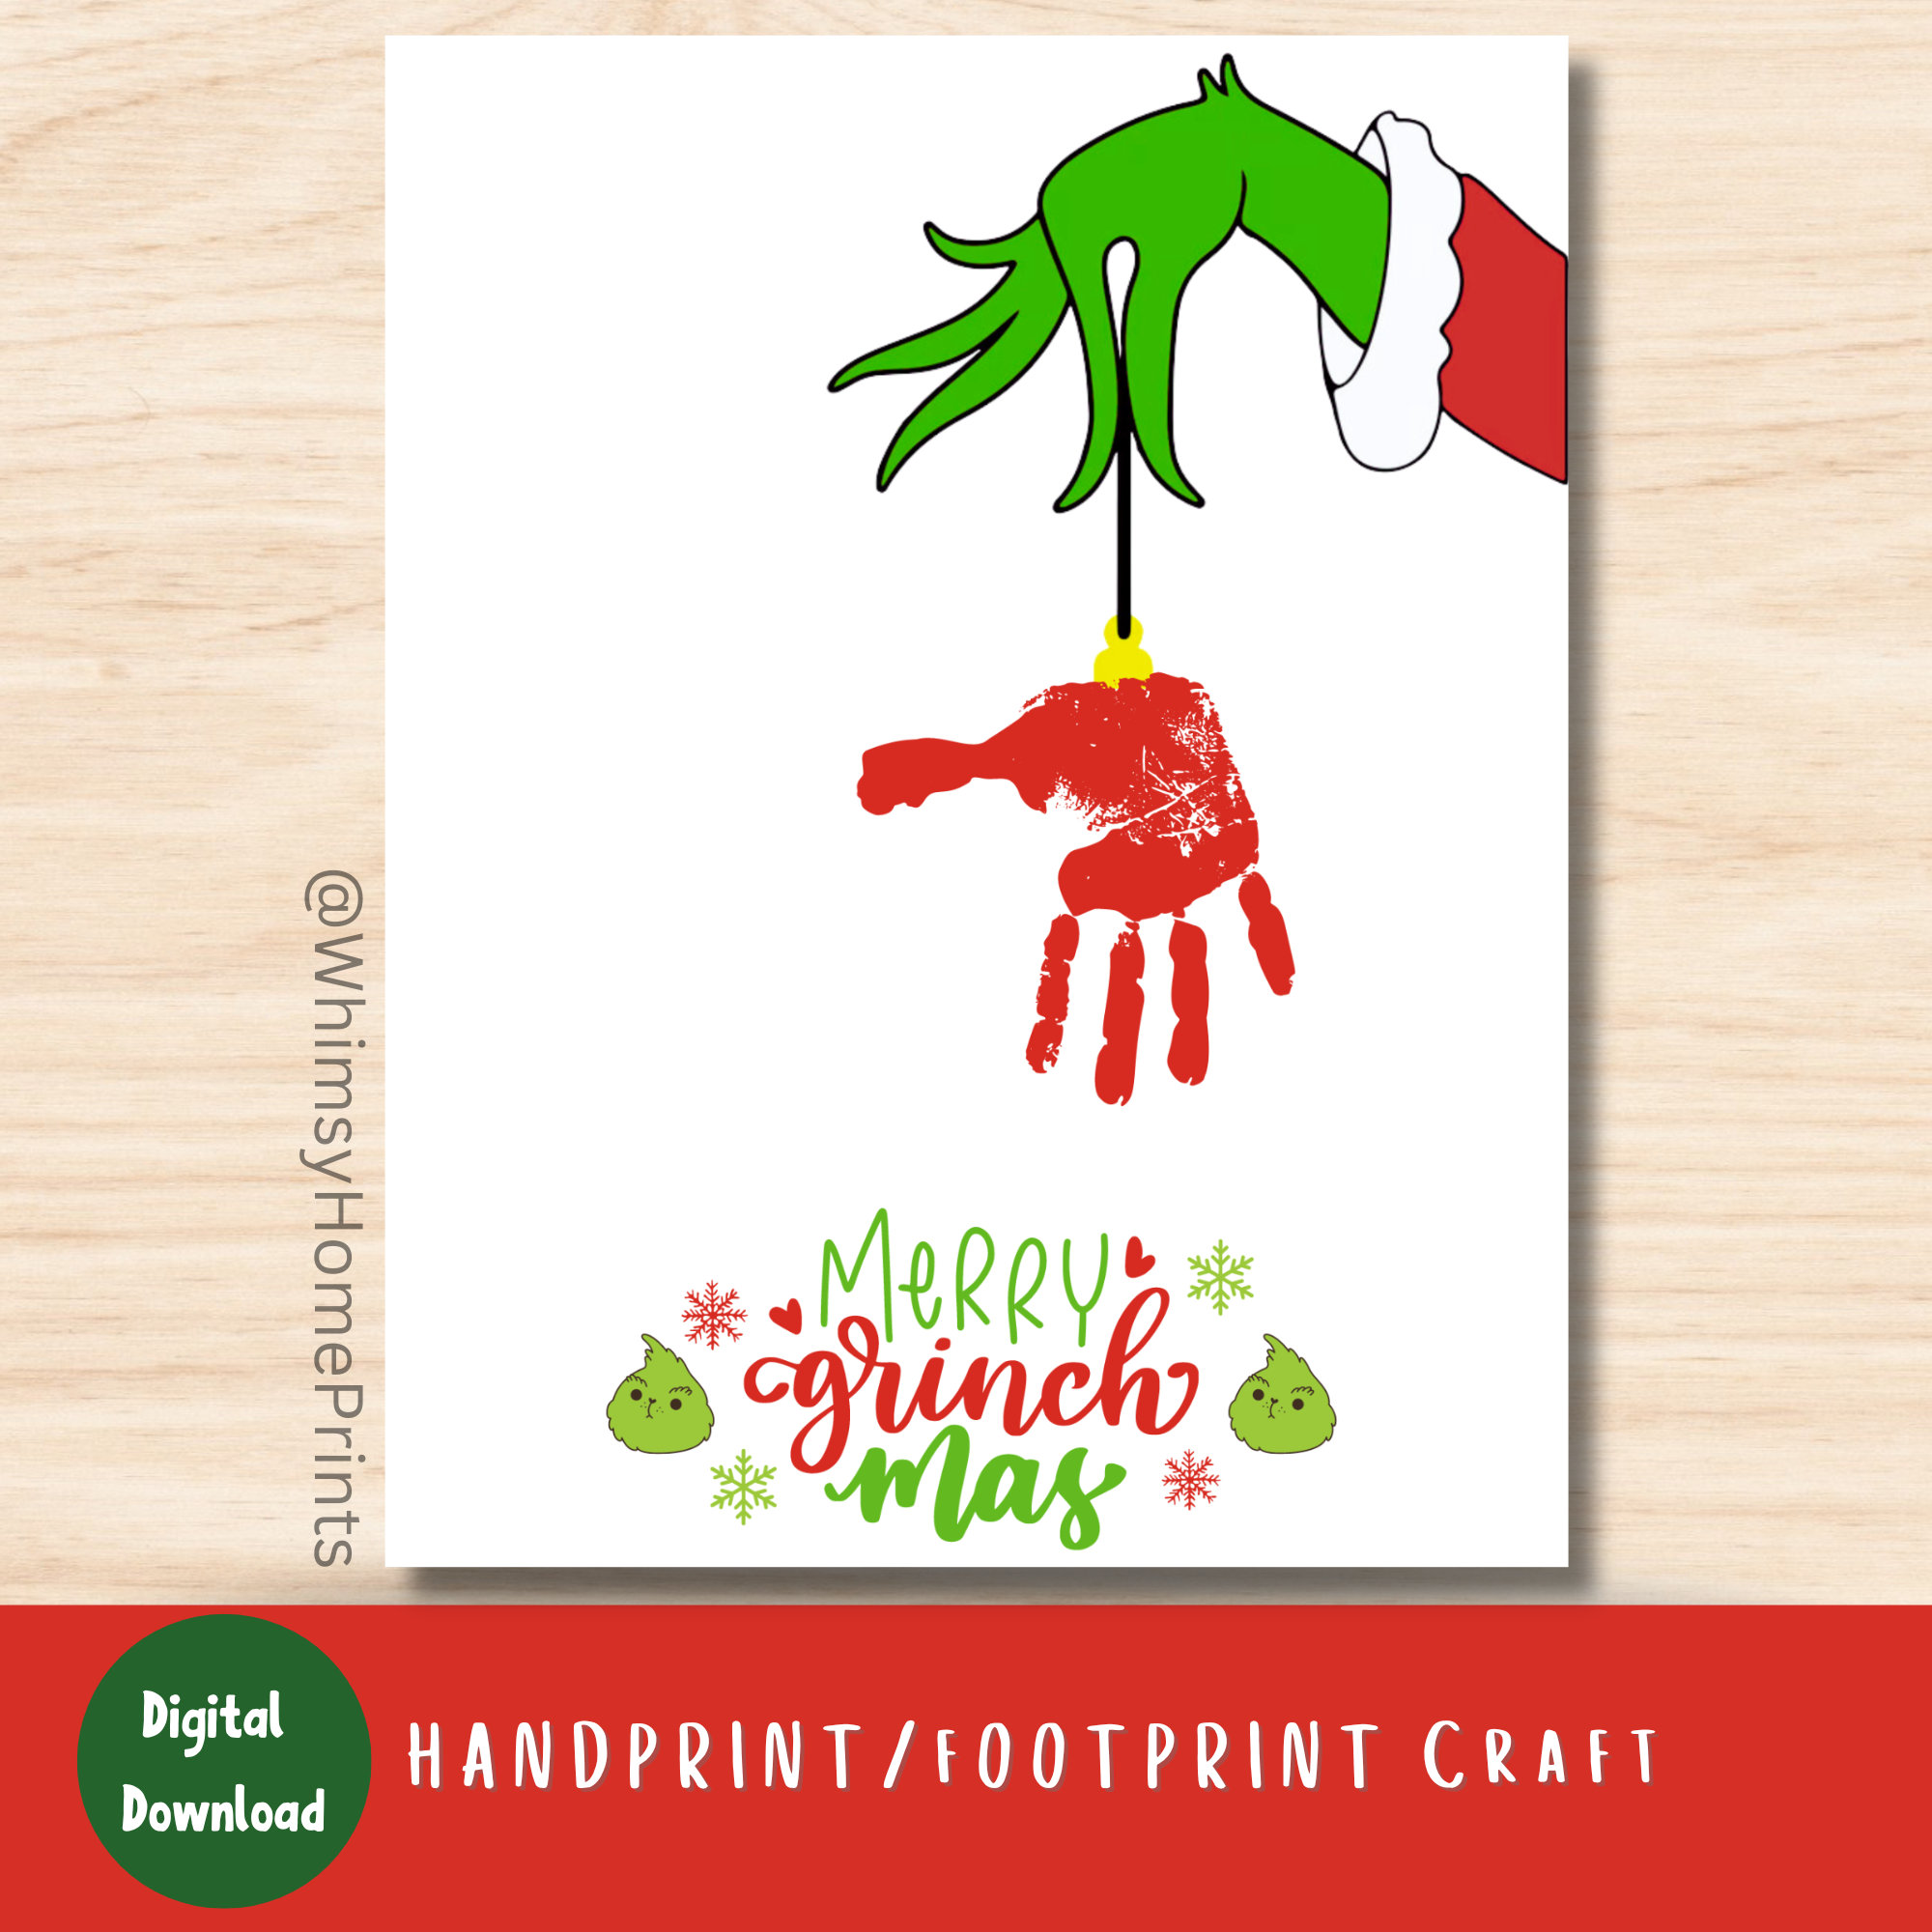 Family Handprint Sign,family gift,Handprints gift,Handprint sign,DIY  handprint,family handprints,kid handprints,sign kit,christmas,new house